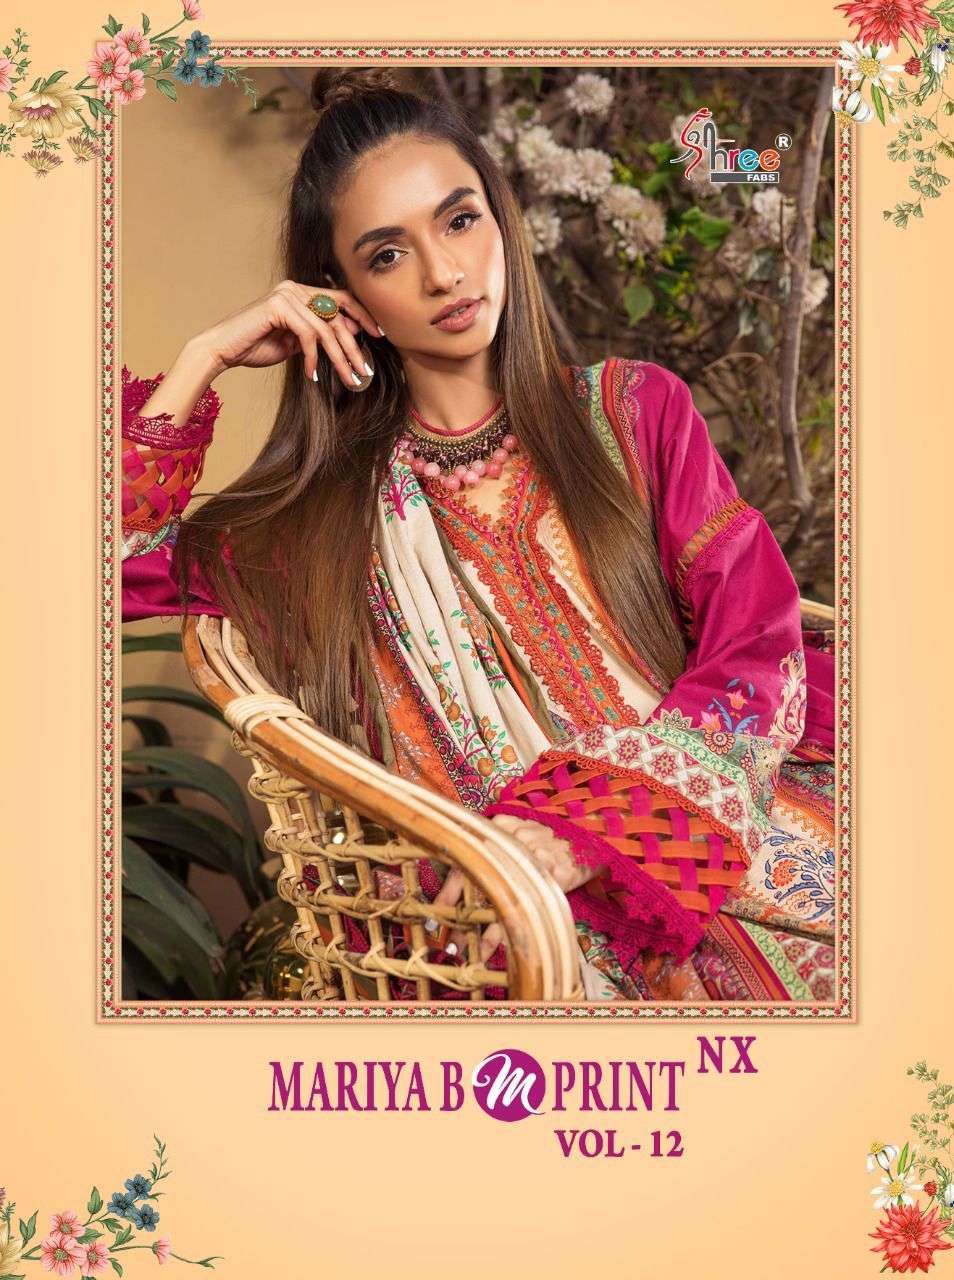 shree fabs mariya b mprint vol 12 nx cotton dupatta pakistani salwar kameez collection surat